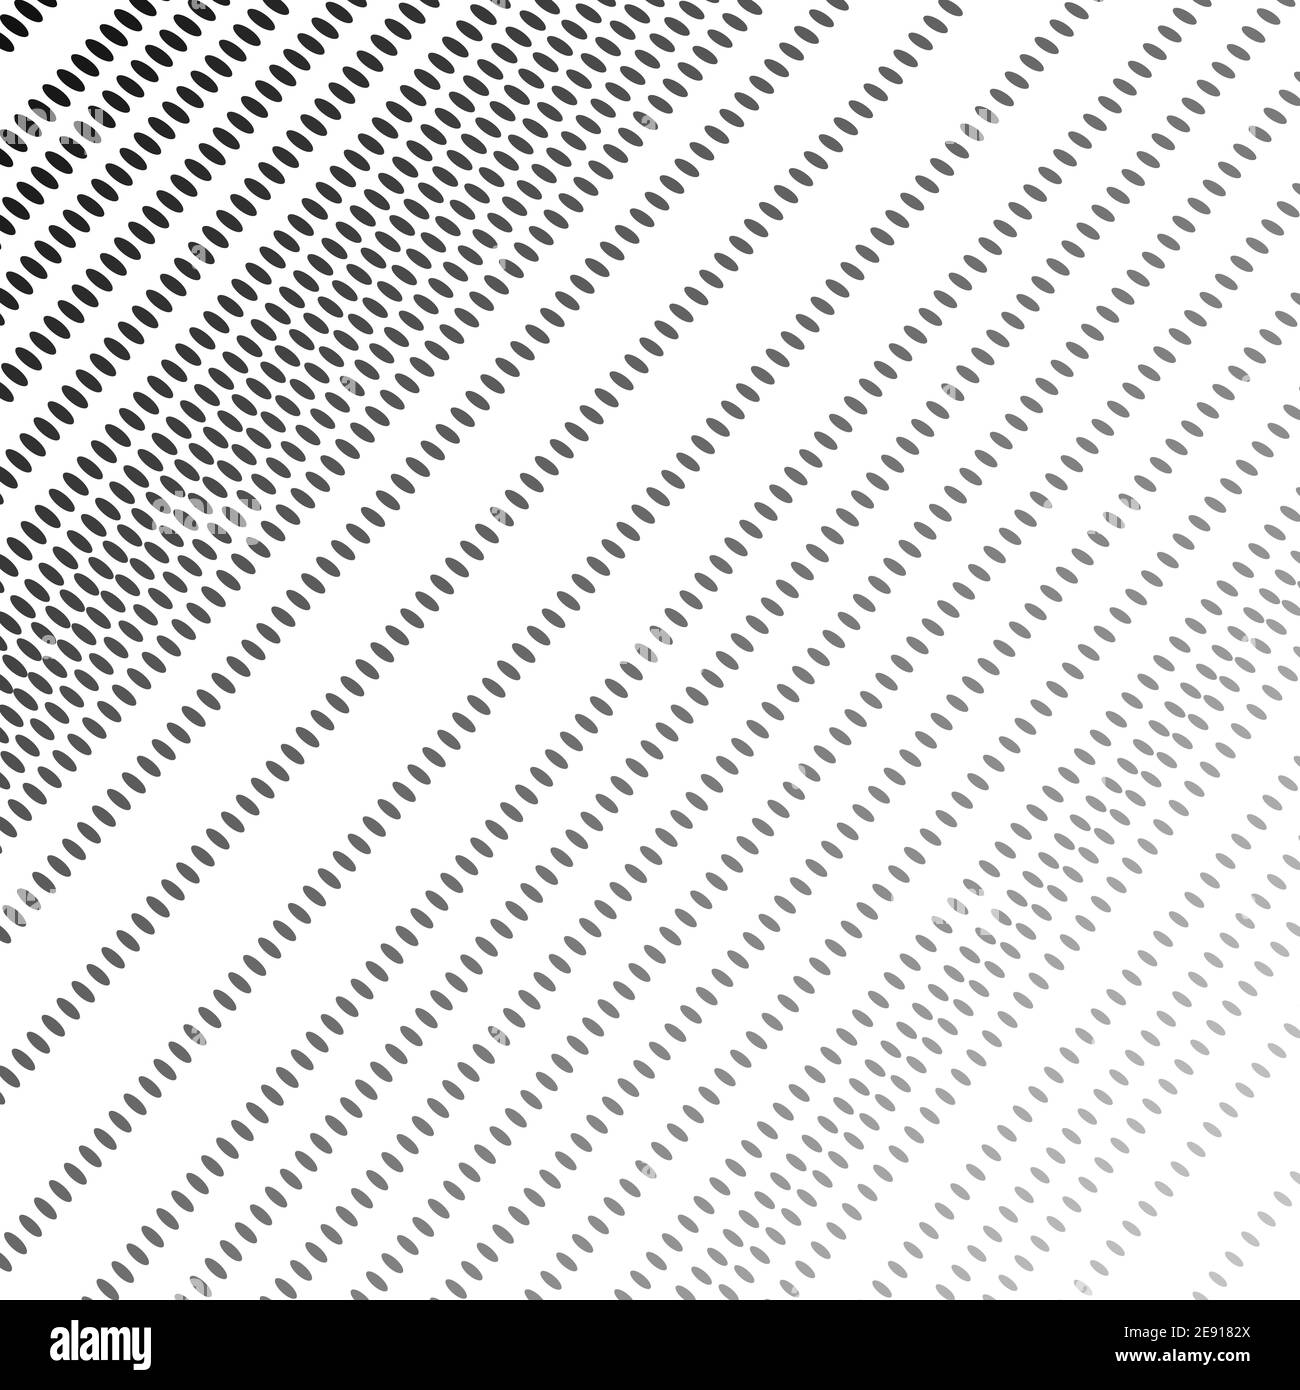 Diagonale gepunktete Linien. Schwarze, graue ovale Flecken, weißer Hintergrund. Abstraktes Halbtonmuster. Vektor monochrome op Art Design. Tech-Konzept. EPS10 Stock Vektor